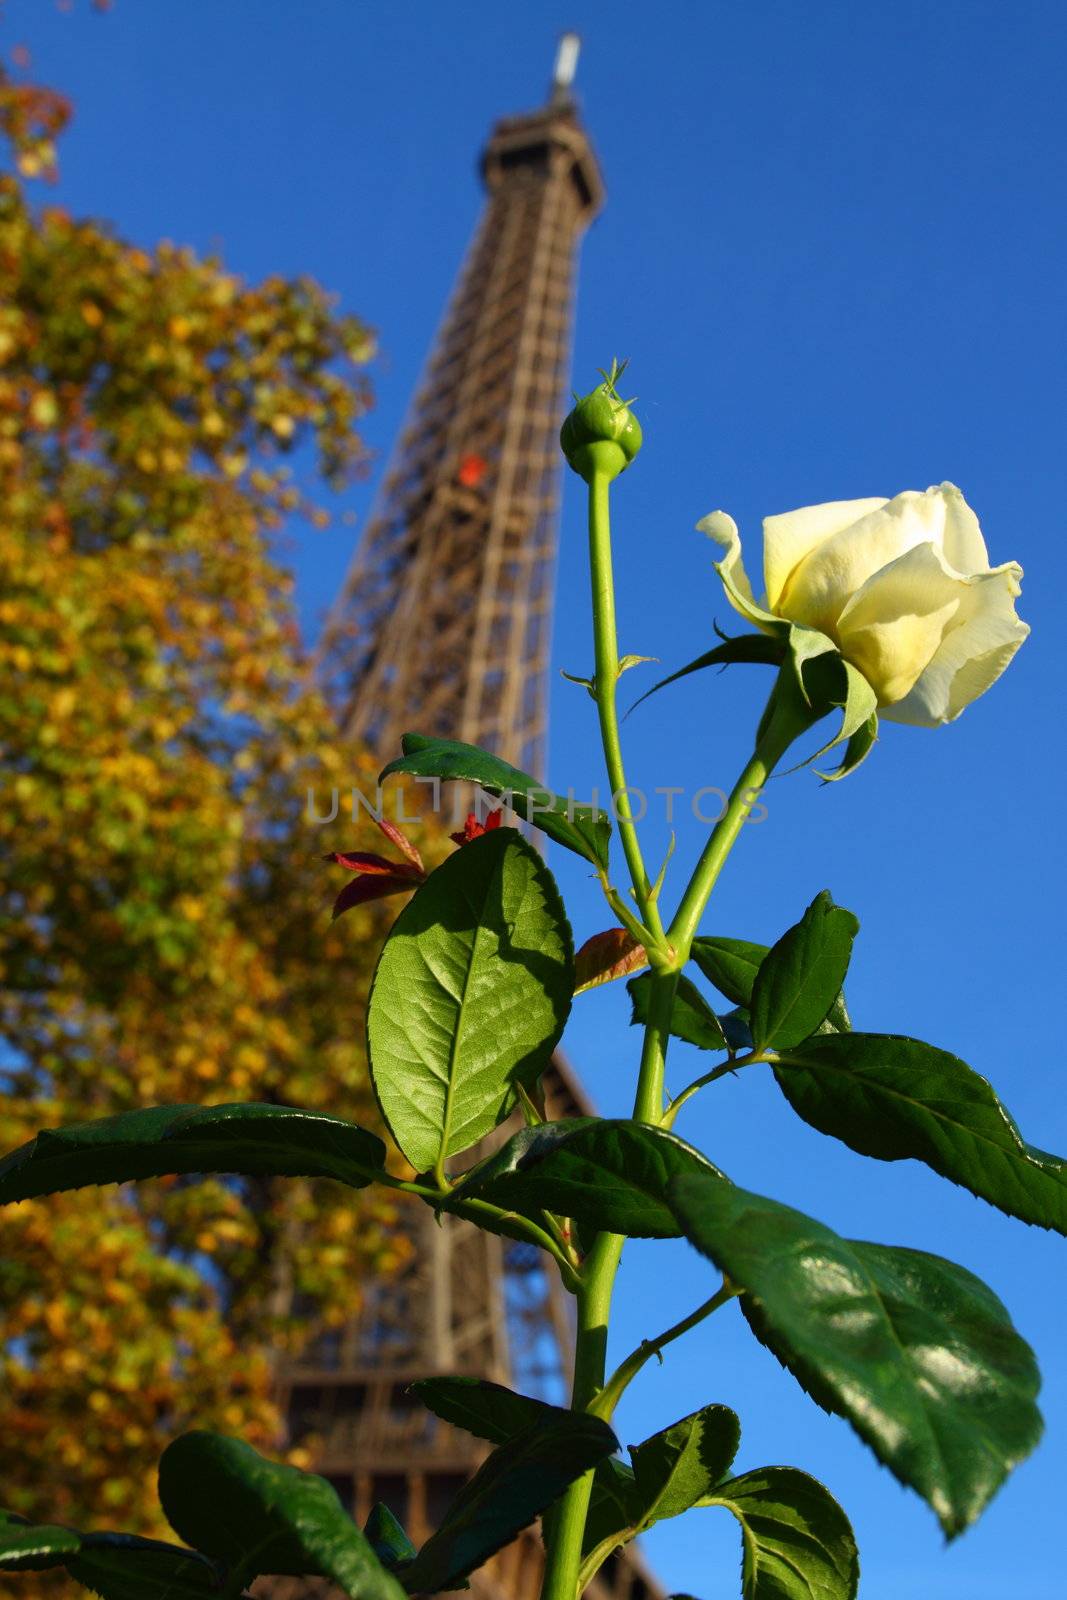 Famous Eiffel Tower of Paris 